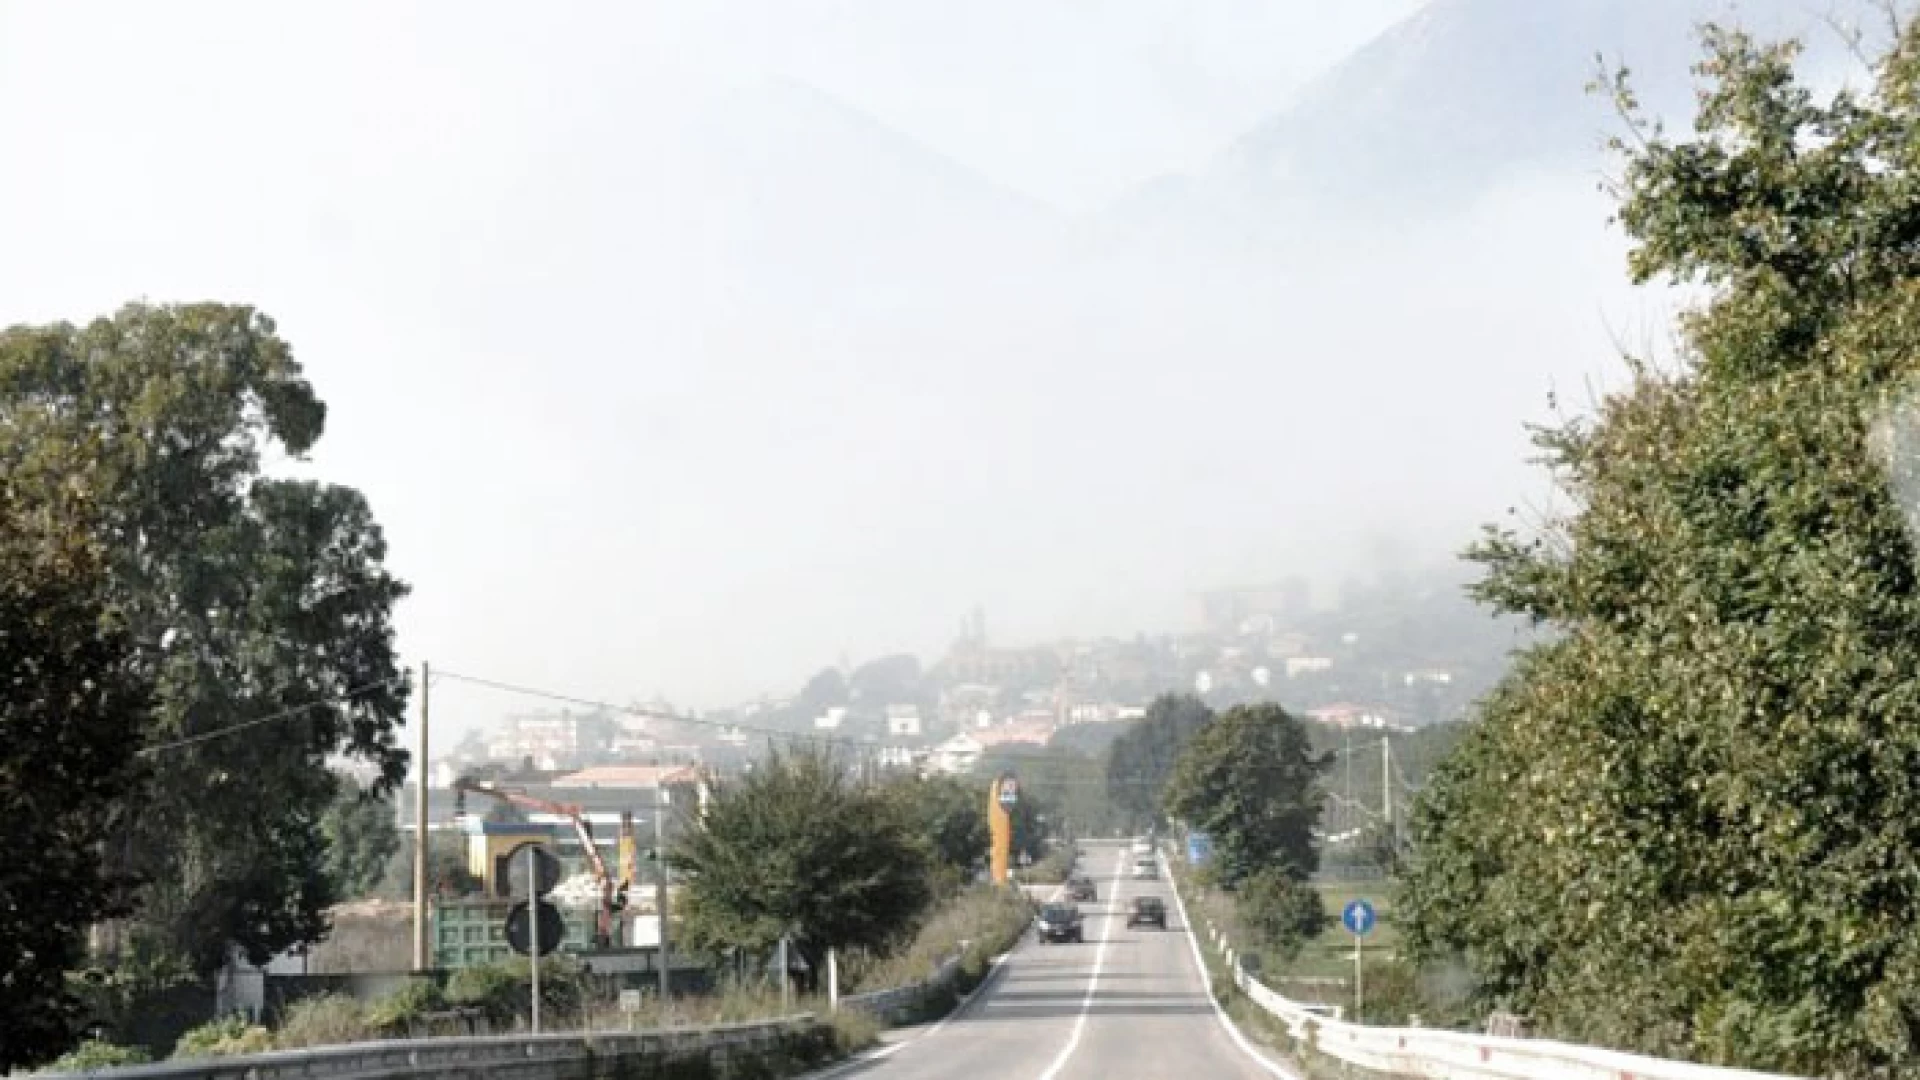 Inquinamento Piana di Venafro, interviene Valerio Fontana. “Il governo Toma sta riducendo i controlli ambientali”.